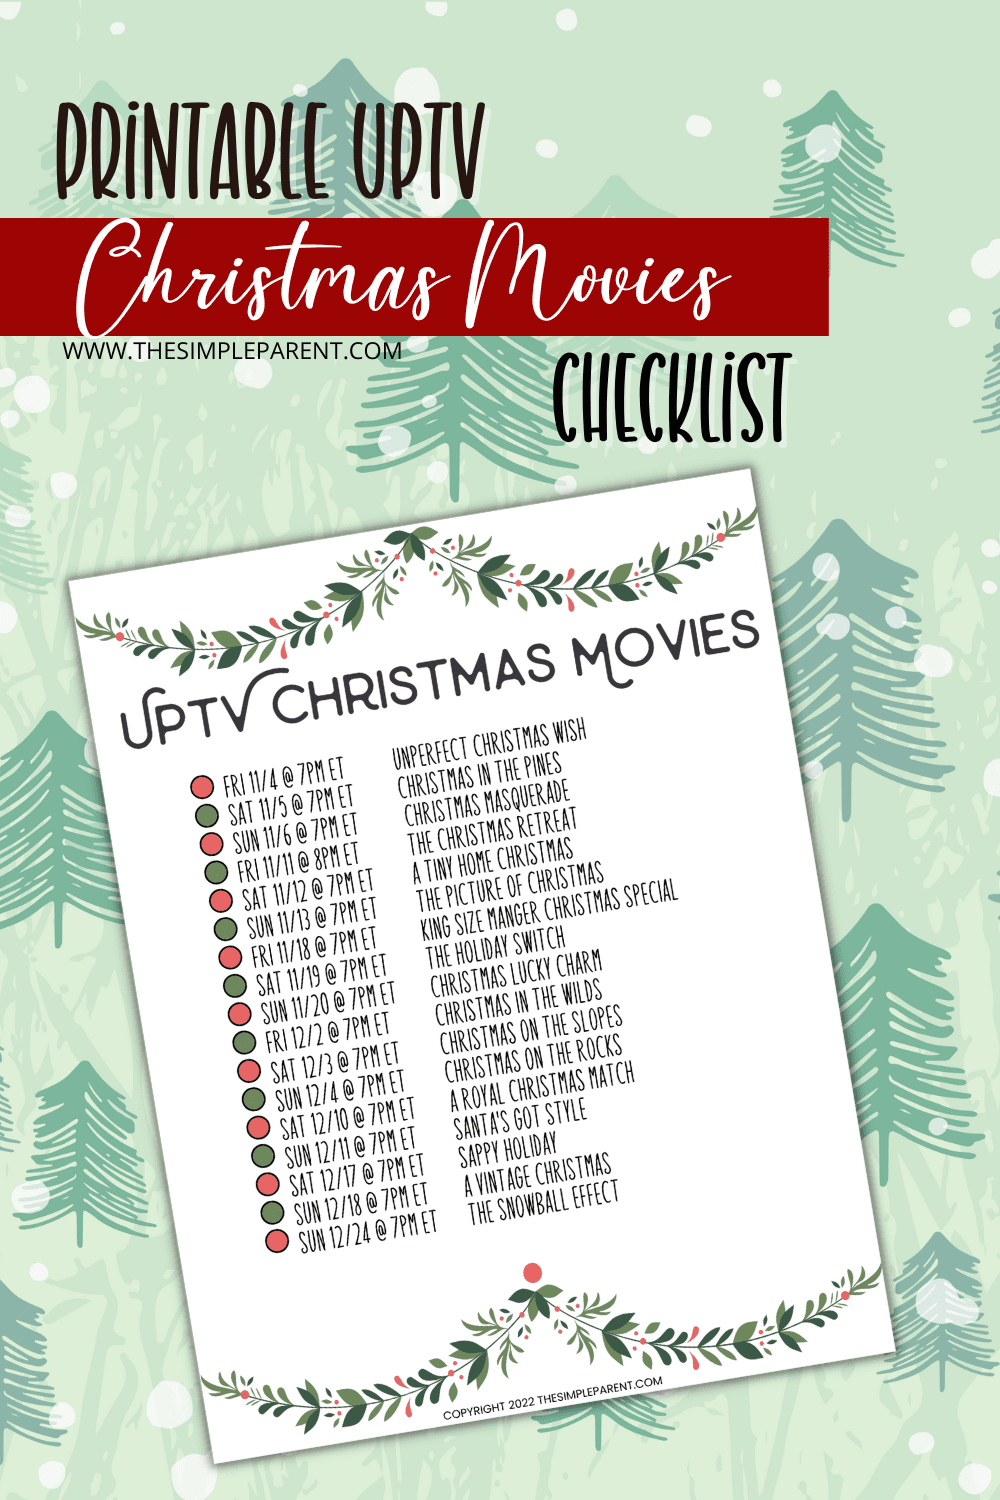 UpTV Christmas Movies List